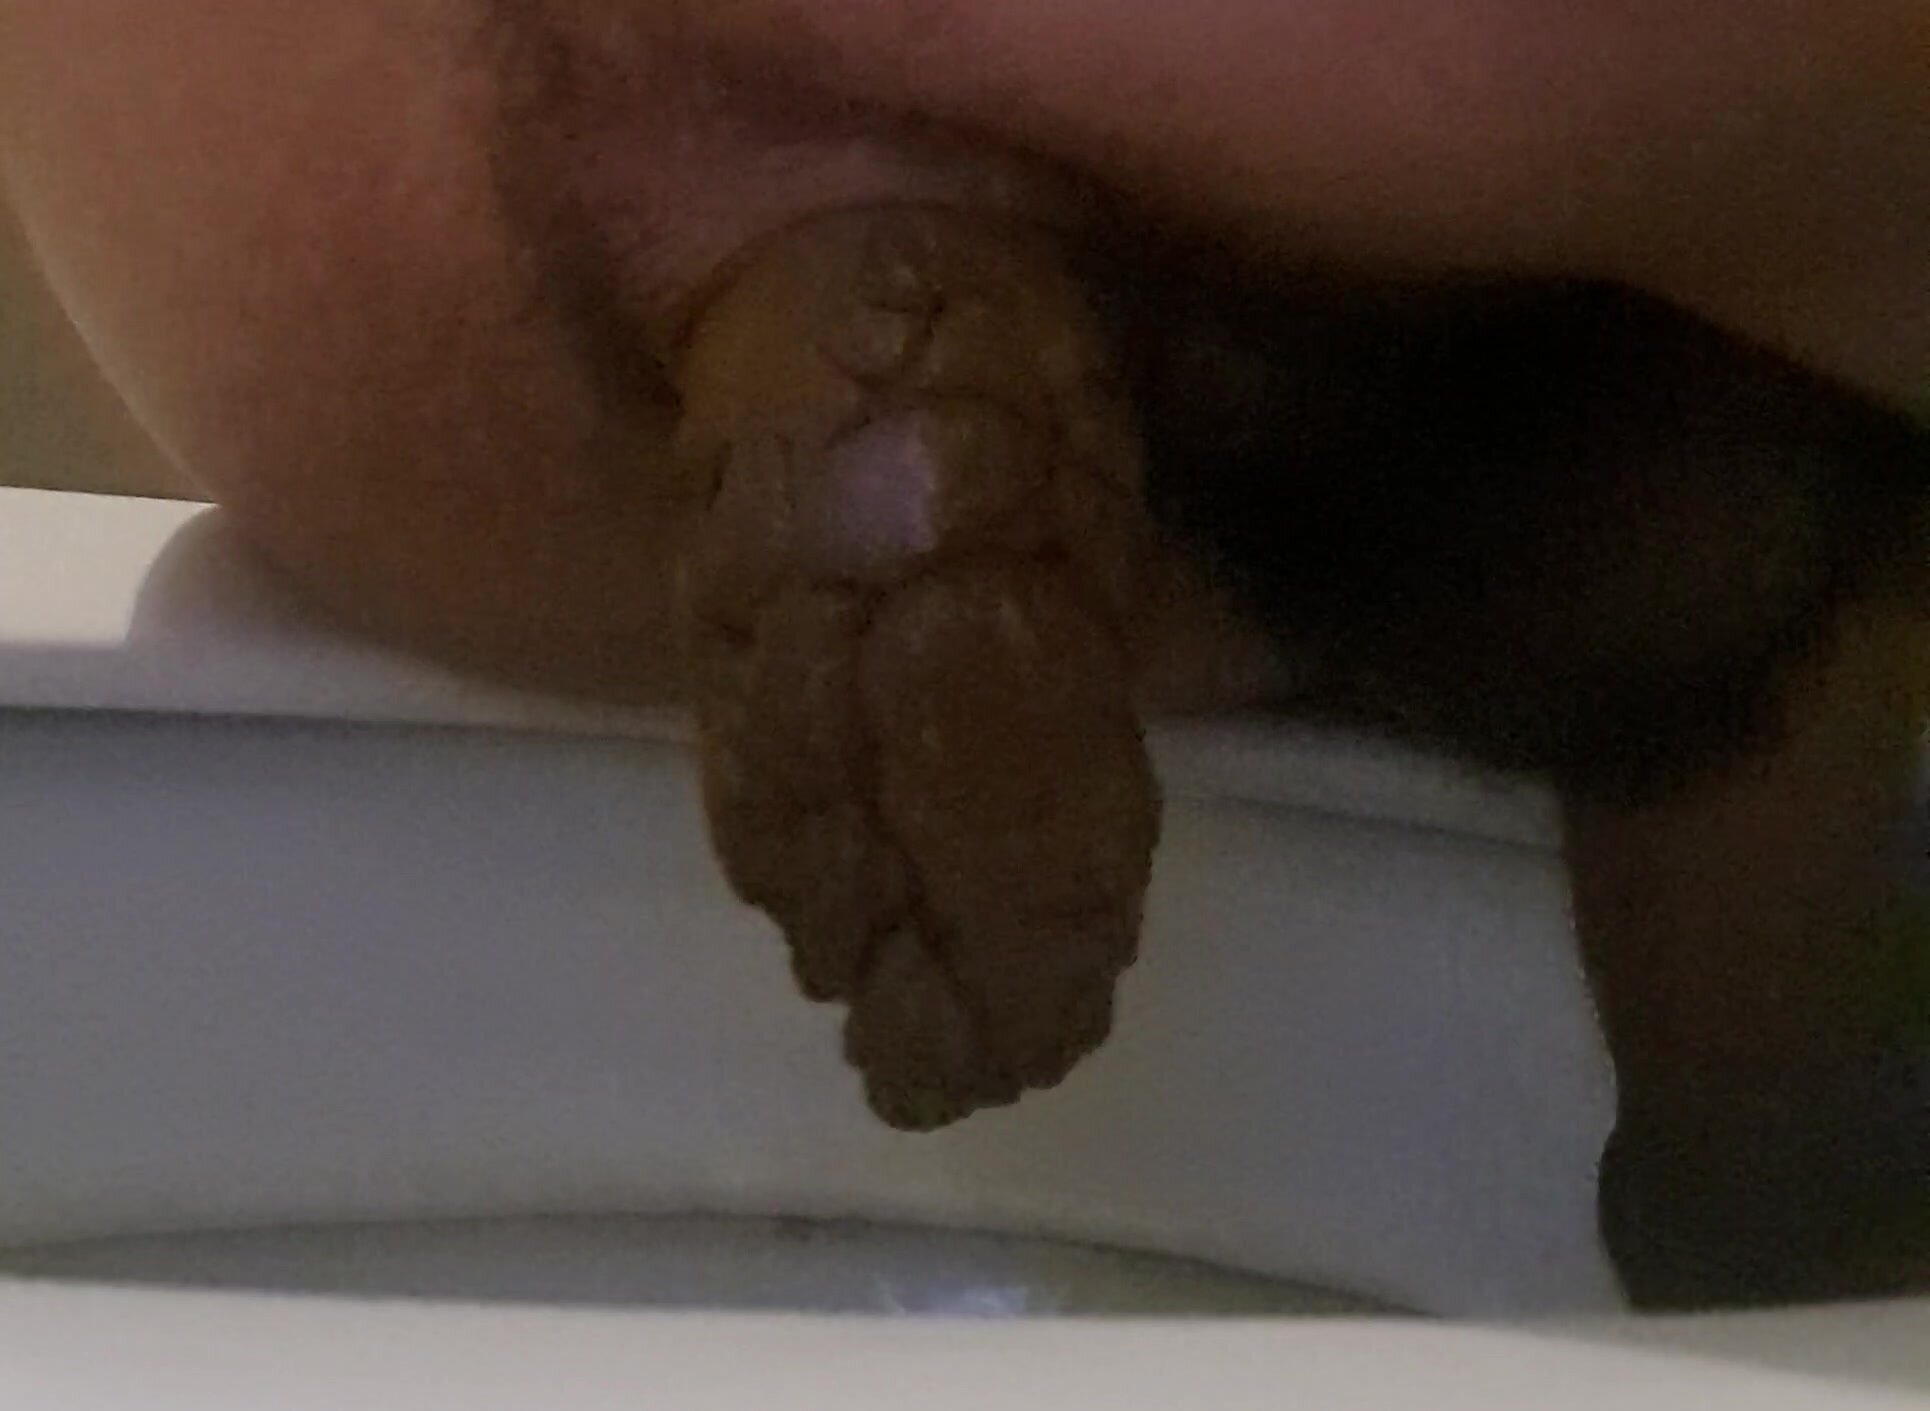 My very hard poop